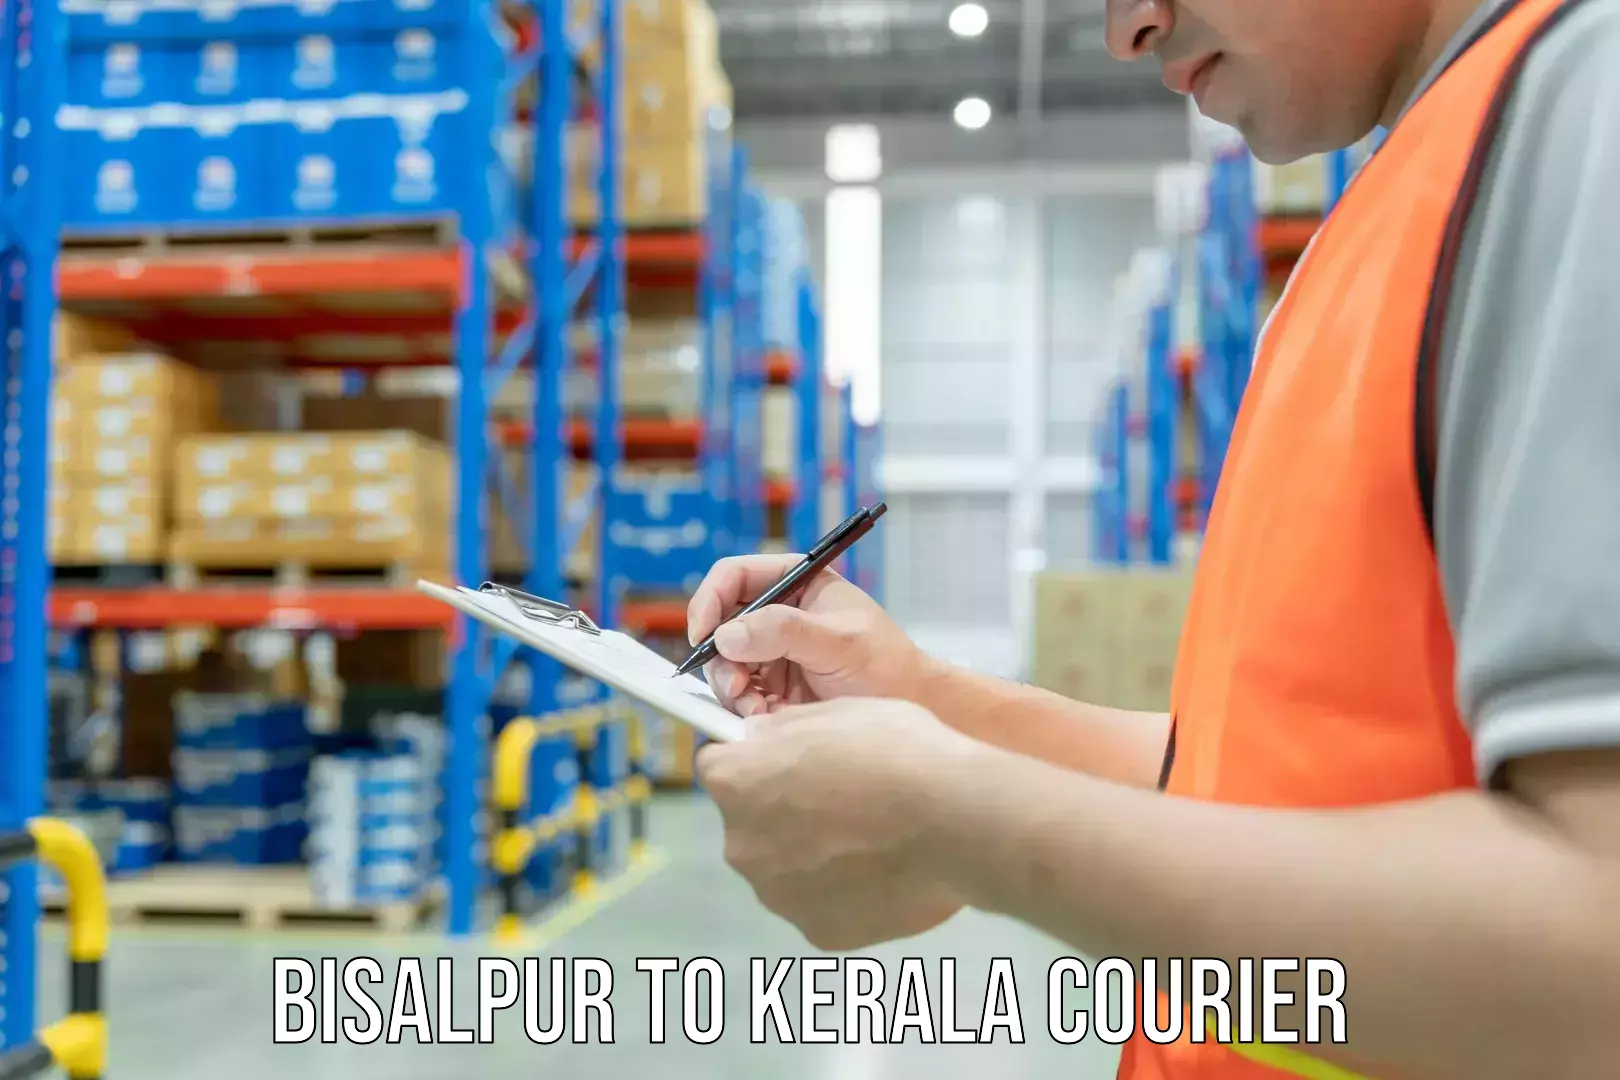 Efficient parcel transport Bisalpur to Kerala